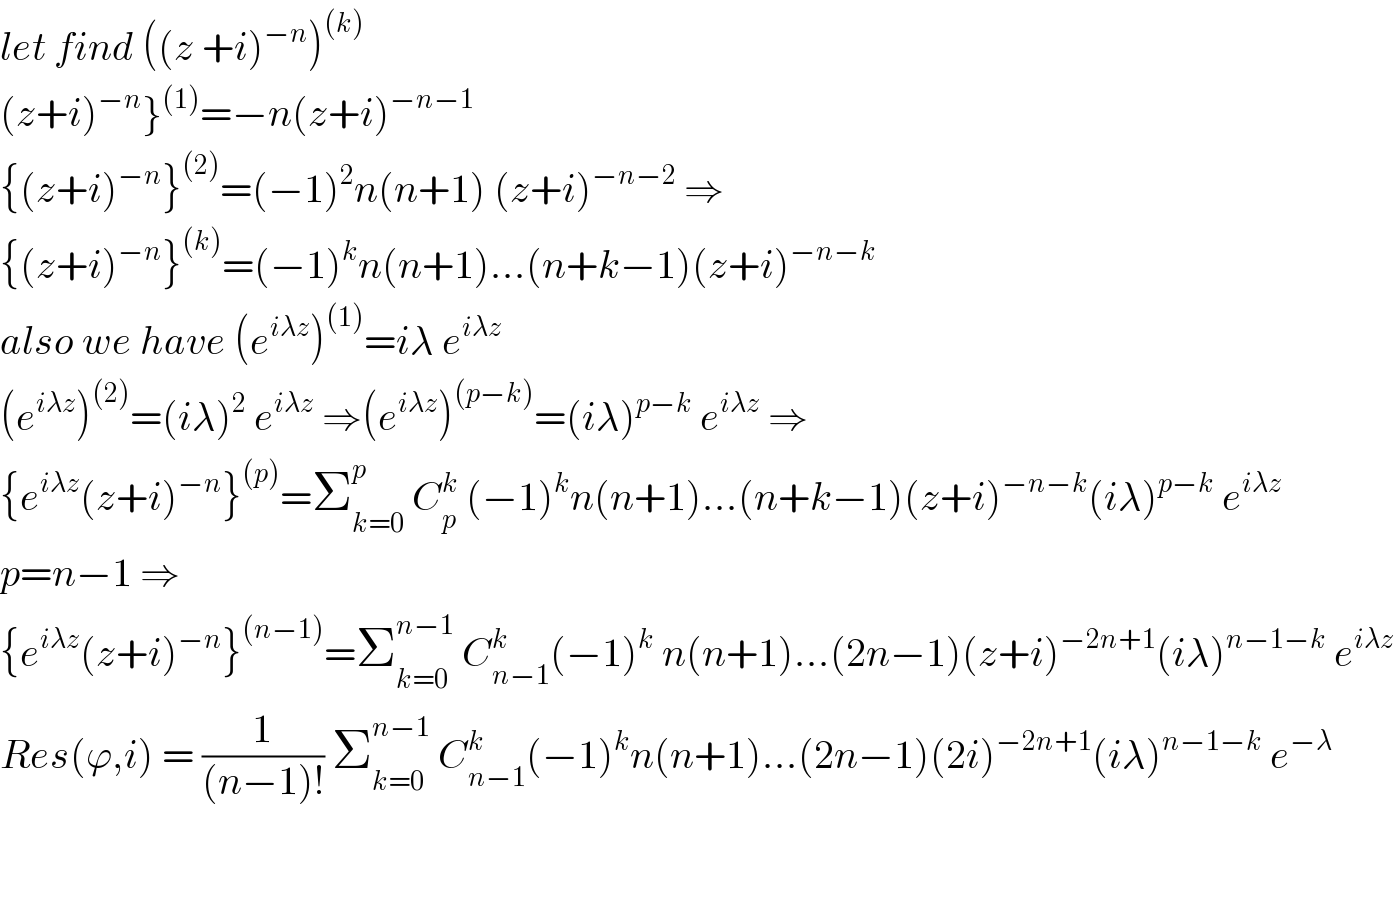 let find ((z +i)^(−n) )^((k))   (z+i)^(−n) }^((1)) =−n(z+i)^(−n−1)   {(z+i)^(−n) }^((2)) =(−1)^2 n(n+1) (z+i)^(−n−2)  ⇒  {(z+i)^(−n) }^((k)) =(−1)^k n(n+1)...(n+k−1)(z+i)^(−n−k)   also we have (e^(iλz) )^((1)) =iλ e^(iλz)   (e^(iλz) )^((2)) =(iλ)^2  e^(iλz)  ⇒(e^(iλz) )^((p−k)) =(iλ)^(p−k)  e^(iλz)  ⇒  {e^(iλz) (z+i)^(−n) }^((p)) =Σ_(k=0) ^p  C_p ^k  (−1)^k n(n+1)...(n+k−1)(z+i)^(−n−k) (iλ)^(p−k)  e^(iλz)   p=n−1 ⇒  {e^(iλz) (z+i)^(−n) }^((n−1)) =Σ_(k=0) ^(n−1)  C_(n−1) ^k (−1)^k  n(n+1)...(2n−1)(z+i)^(−2n+1) (iλ)^(n−1−k)  e^(iλz)   Res(ϕ,i) = (1/((n−1)!)) Σ_(k=0) ^(n−1)  C_(n−1) ^k (−1)^k n(n+1)...(2n−1)(2i)^(−2n+1) (iλ)^(n−1−k)  e^(−λ)       